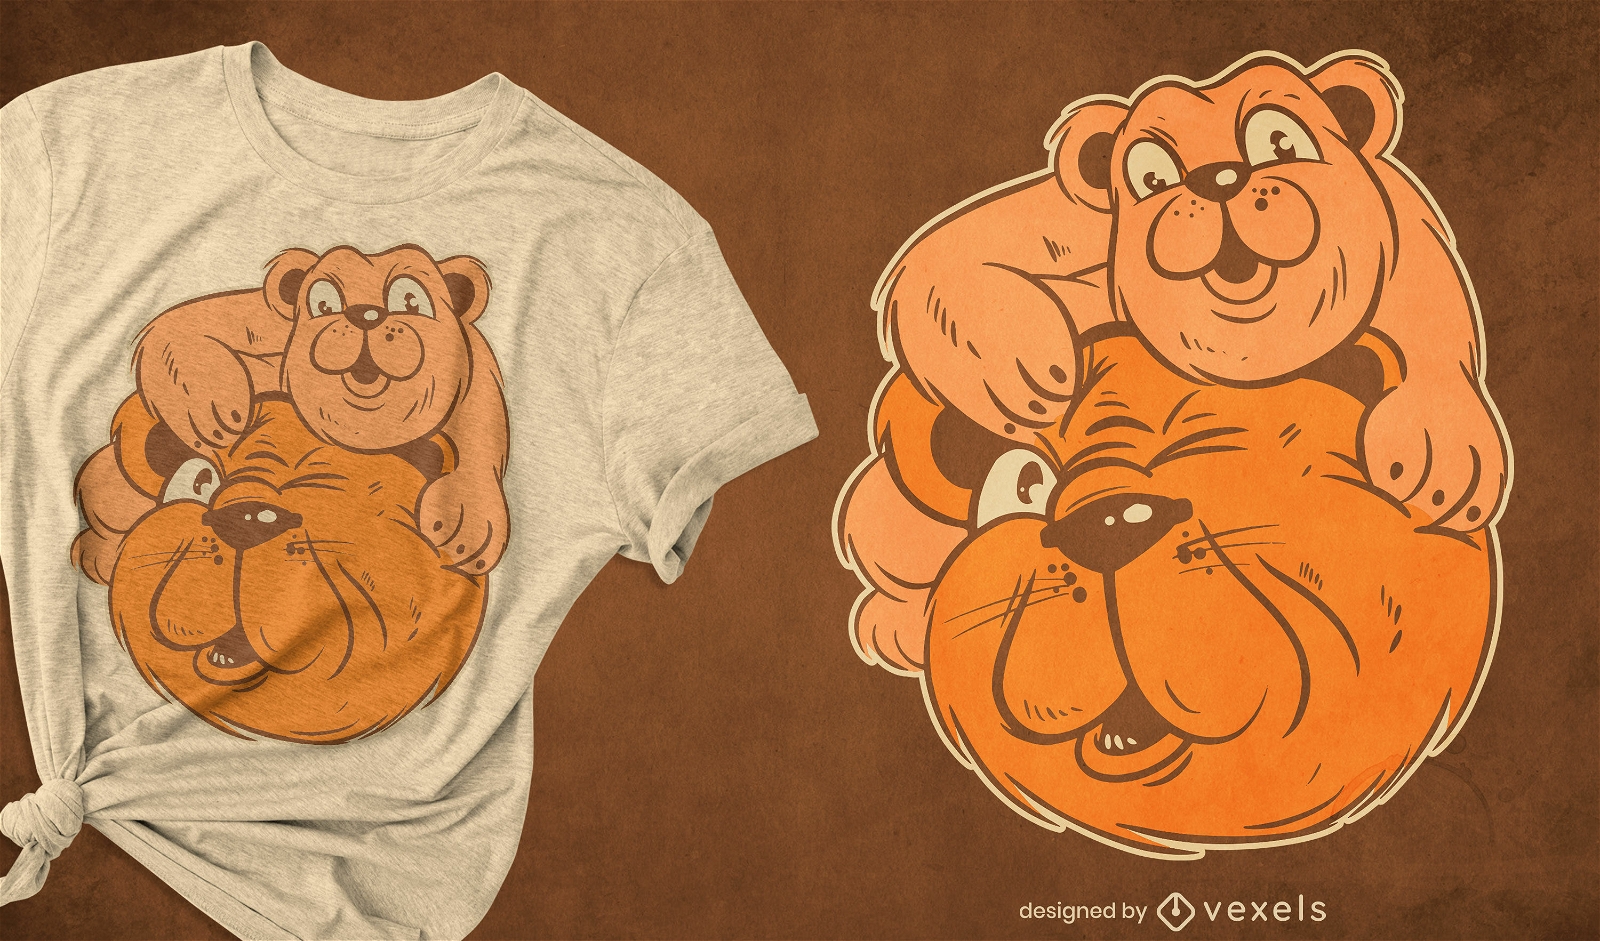 Dise?o de camiseta de dibujos animados retro de pap? oso grizzly